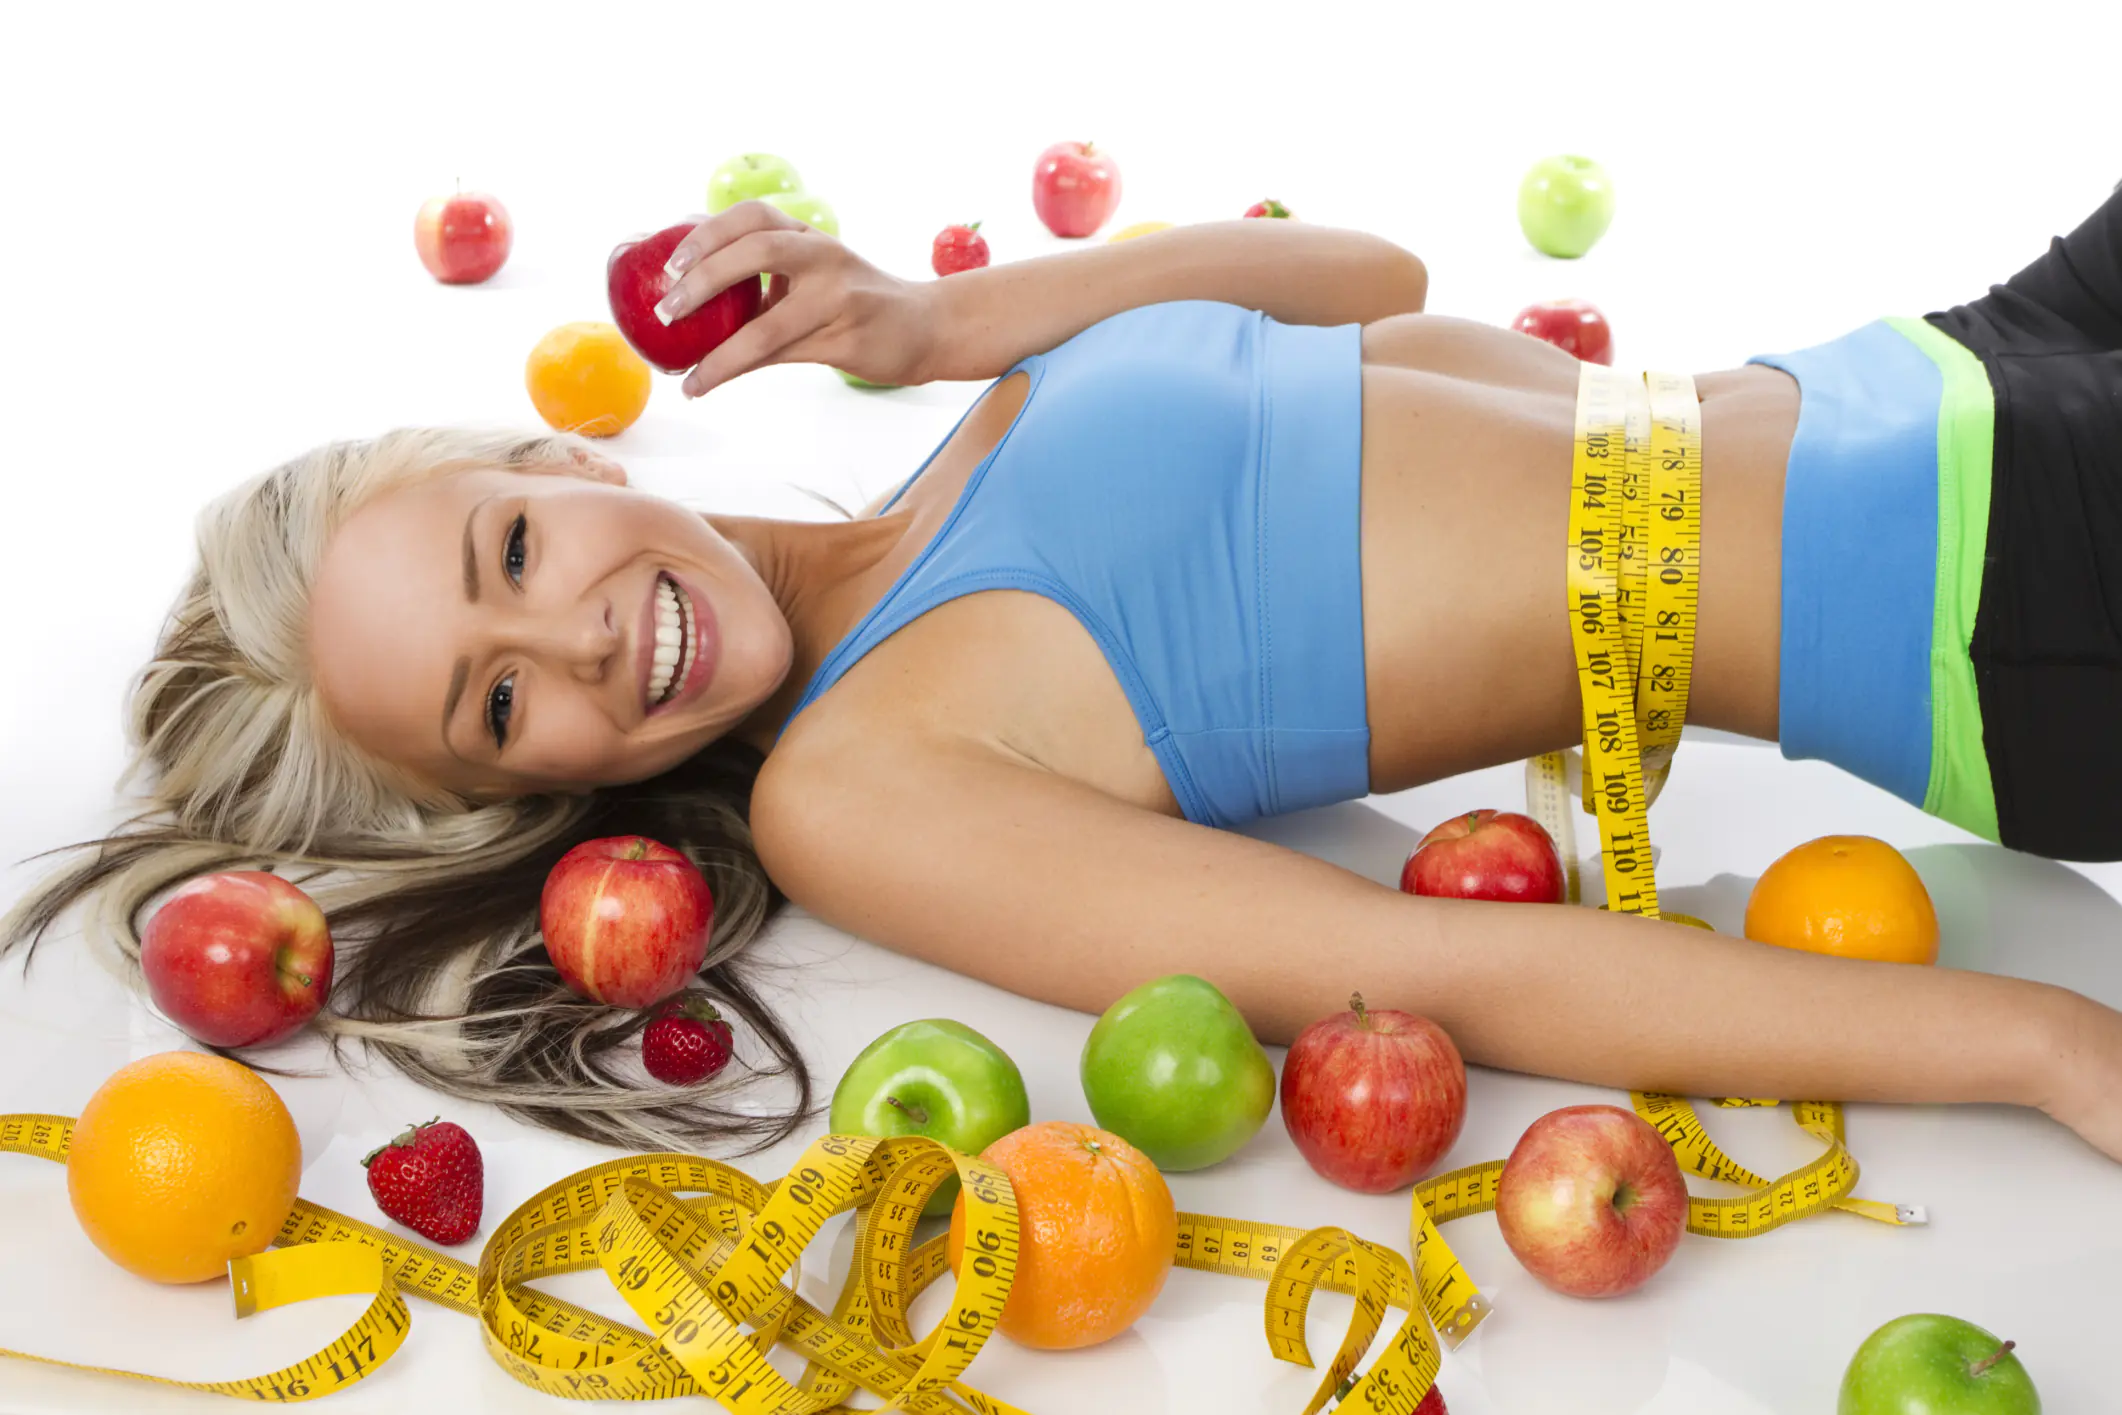 Welche Diäten zur Gewichtsreduktion führen zu Ergebnissen und sind nicht gesundheitsschädlich?